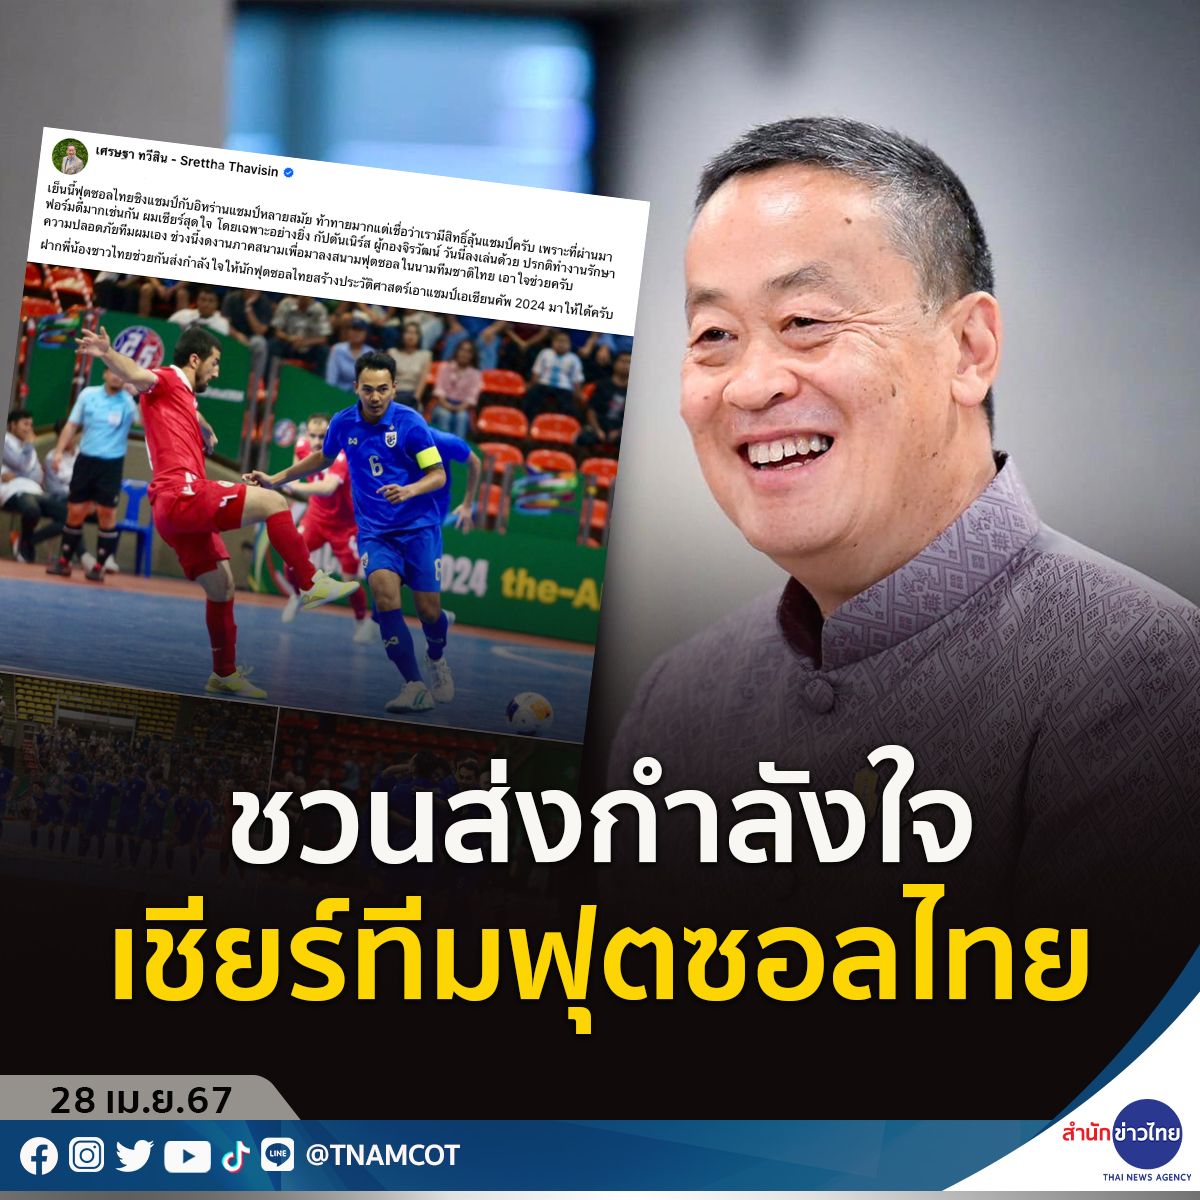 นายเศรษฐา ทวีสิน นายกรัฐมนตรีโพสต์ชวนชาวไทย ร่วมส่งกำลังใจเชียร์ทีมฟุตซอลไทย ลุ้นสร้างประวัติศาสตร์ คว้าแชมป์เอเชียนคัพ 2024
.
สำหรับเกมฟุตซอลชิงแชมป์เอเชีย “เอเอฟซี ฟุตซอล เอเชียนคัพ 2024”  ทีมโต๊ะเล็กช้างศึก จะลงสนามรอบชิงชนะเลิศพบกับ อิหร่าน แชมป์ 12 สมัยและเต็ง 1 ในวันนี้…